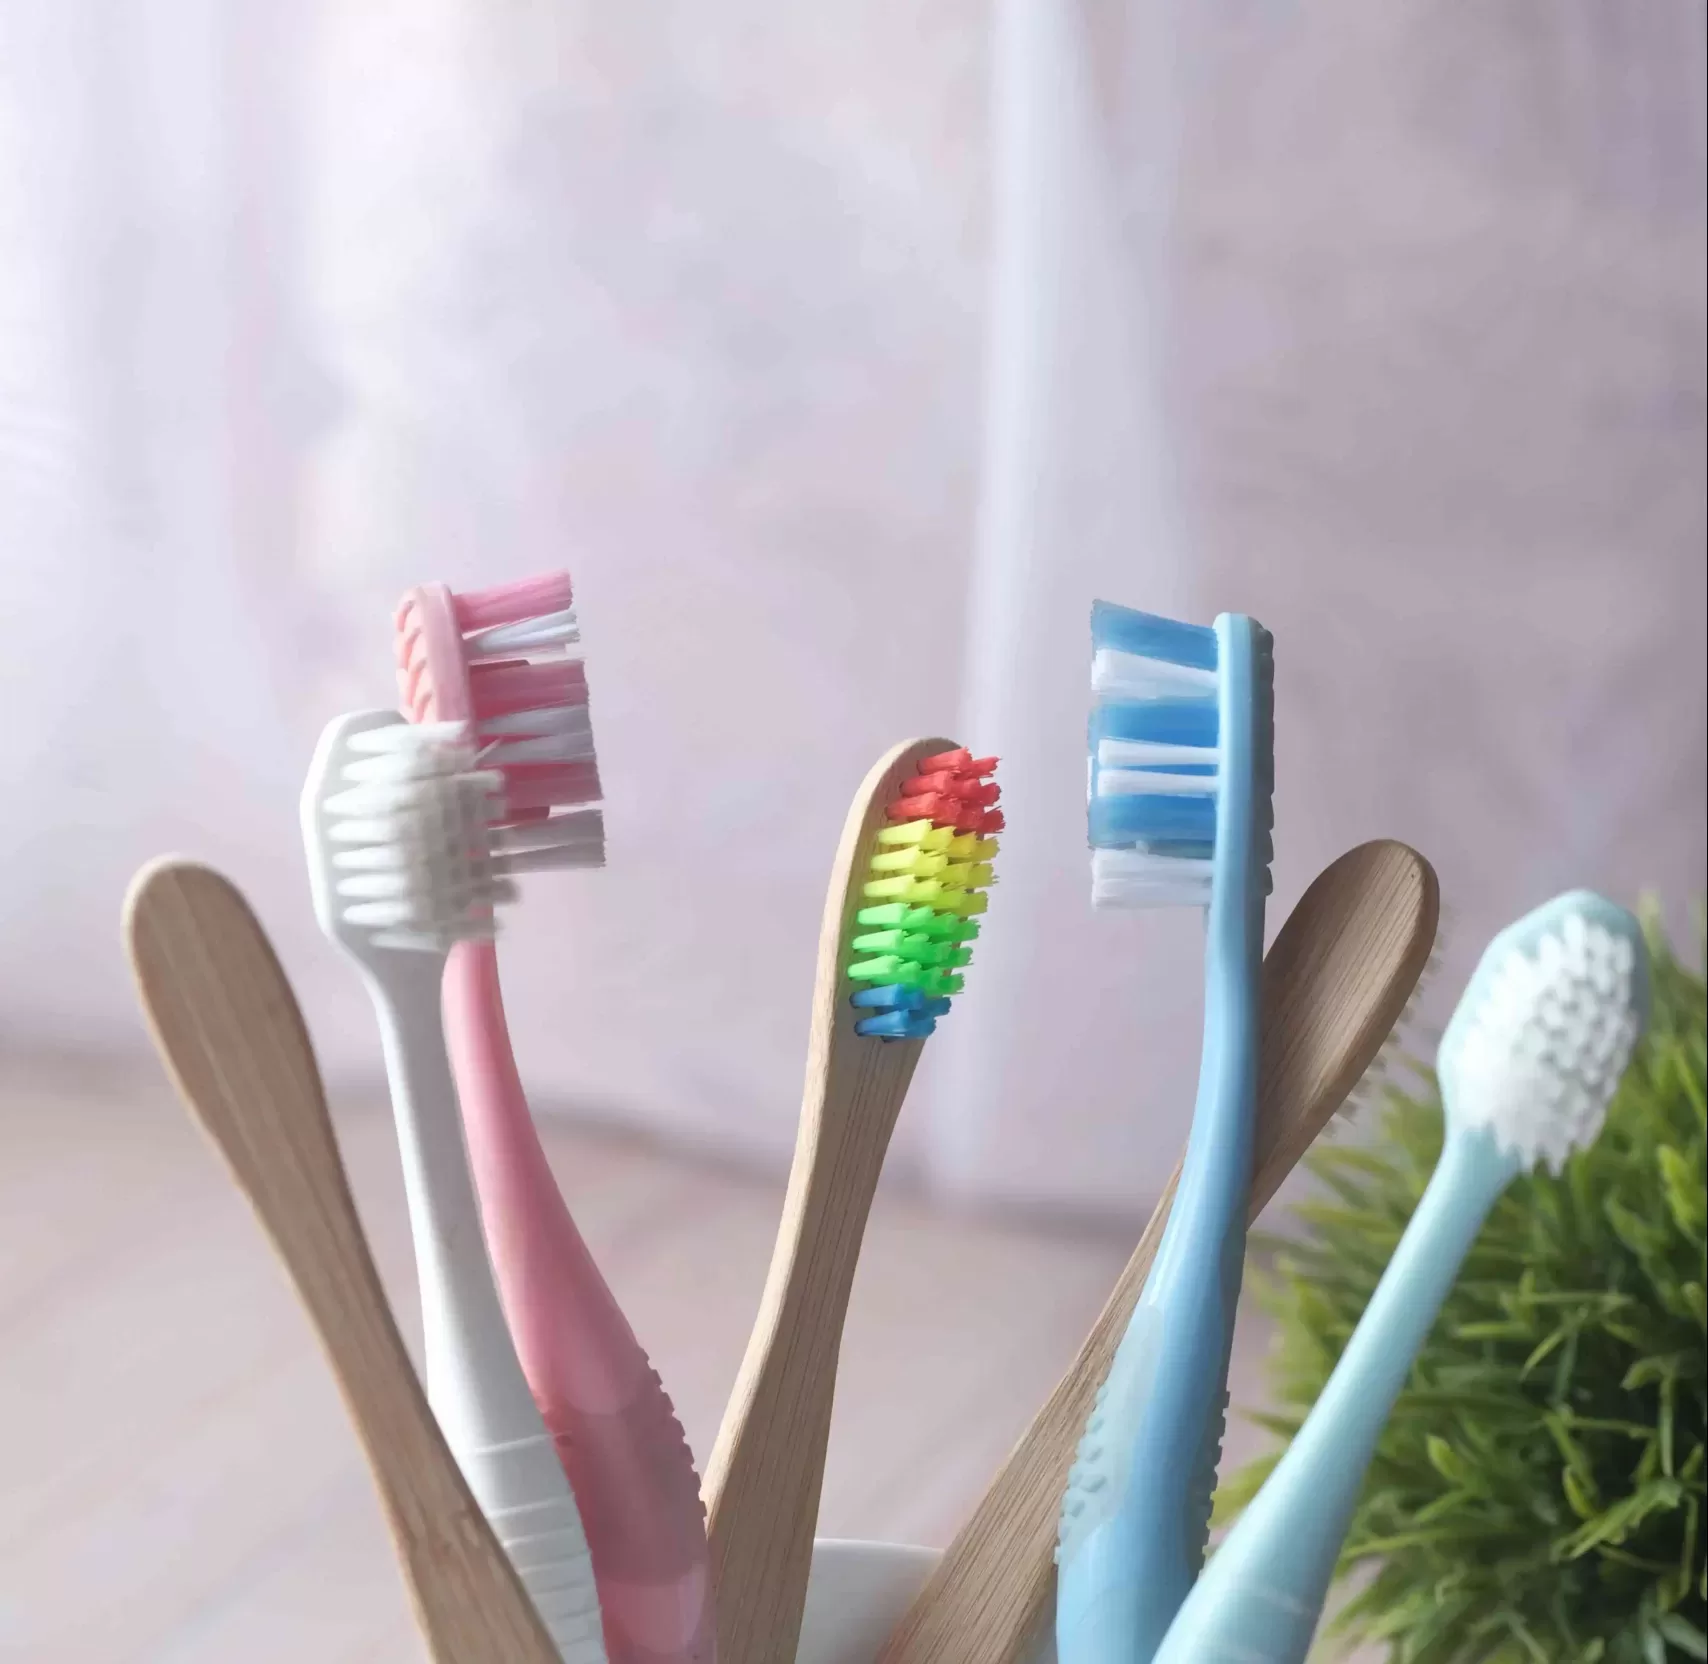 Comment choisir sa brosse à dents?